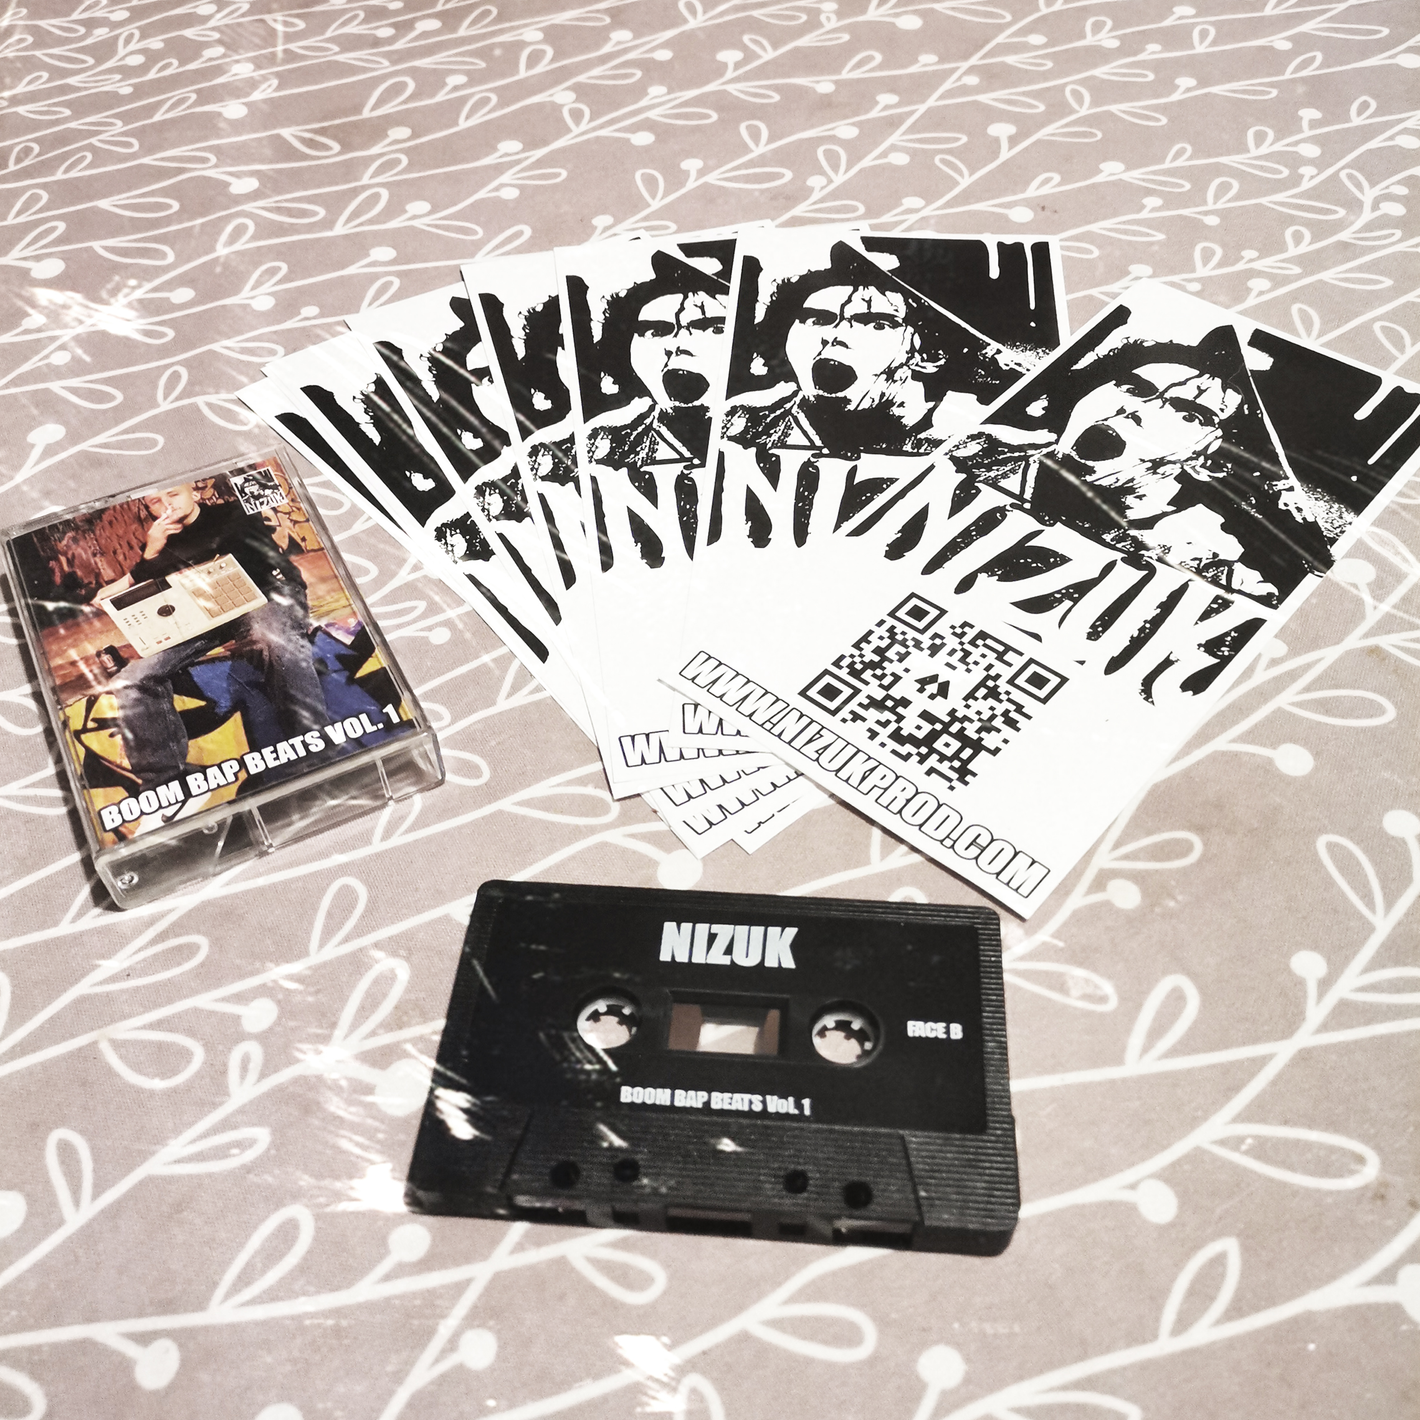 Avis d'un client sur la boutique du beatmaker Hip Hop Nizuk : "Très bonne k7 qui nous replonge dans les années 90. De la bonne boom bap à l'ancienne".